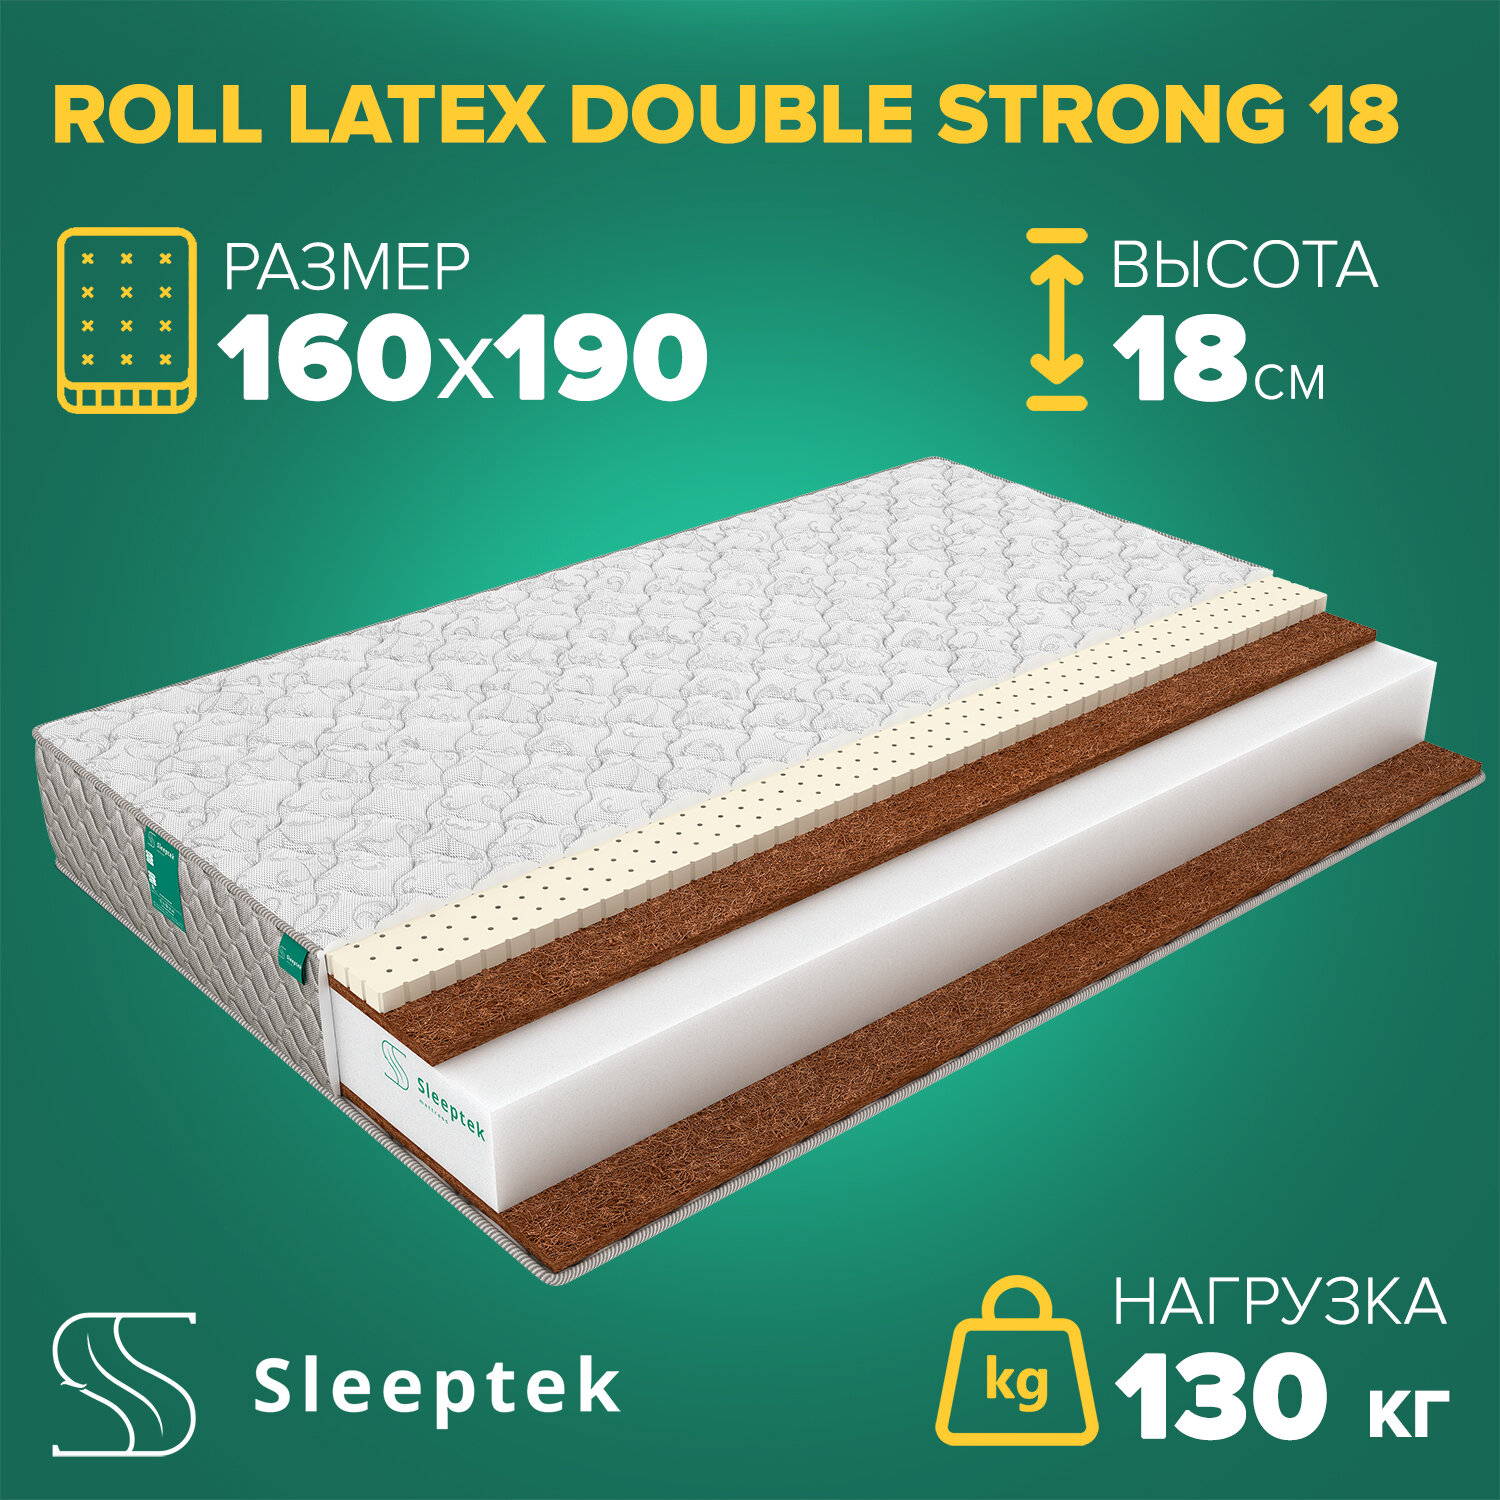 Матрас Sleeptek Roll Latex DoubleStrong 18 160х190